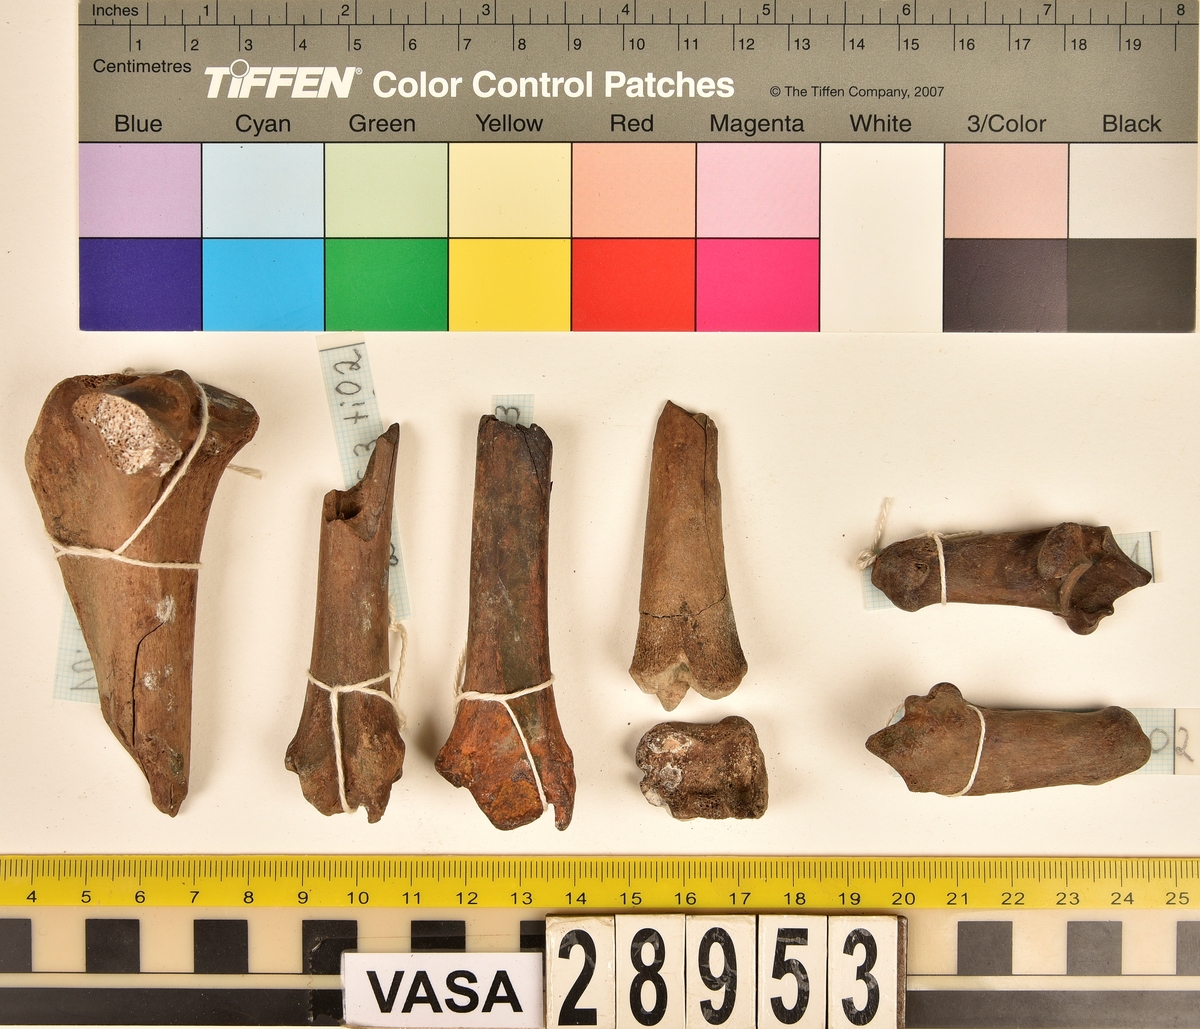 Ben från får/get (Ovis aries/Capra hircus).
2 st. första halskotan (atlas), (en av dem är i två delar).
2 st. delar av andra halskotan (epistropheus).
4 st. halskotor (vertebrae cervicale).
2 st. bröstkotor (vertebrae thoracale).
12 st. revben (costae).
2 st. skulderblad (scapula).
2 st. delar av bäckenben (pelvis).
1 st. överarmsben (humerus).
1 st. nedre ledyta av strålben (distal epifys av radius).
1 st. armbågsben (ulna).
4 st. skenben (tibia).
1 st. nedre ledyta av skenben (tibia).
2 st. hälben (calcaneus).
1 st. kanonben.
1 st. övre del av underkäken (proximal del av mandibula).